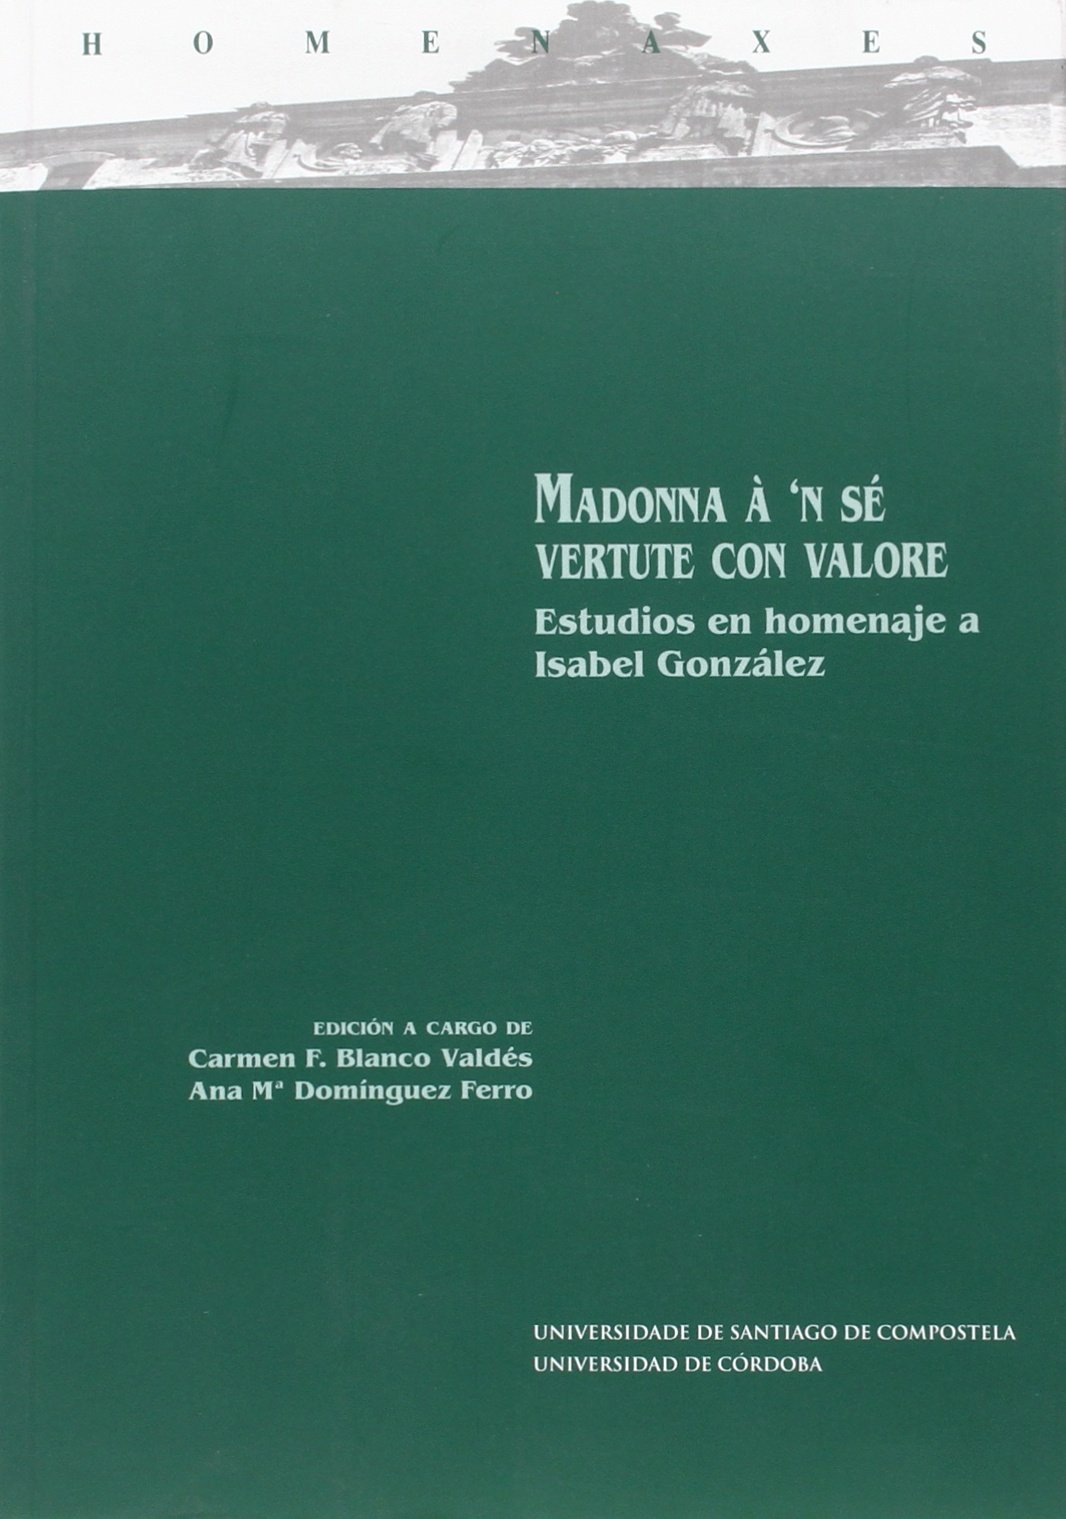 Imagen de portada del libro Madonna à 'n sé vertute con valore